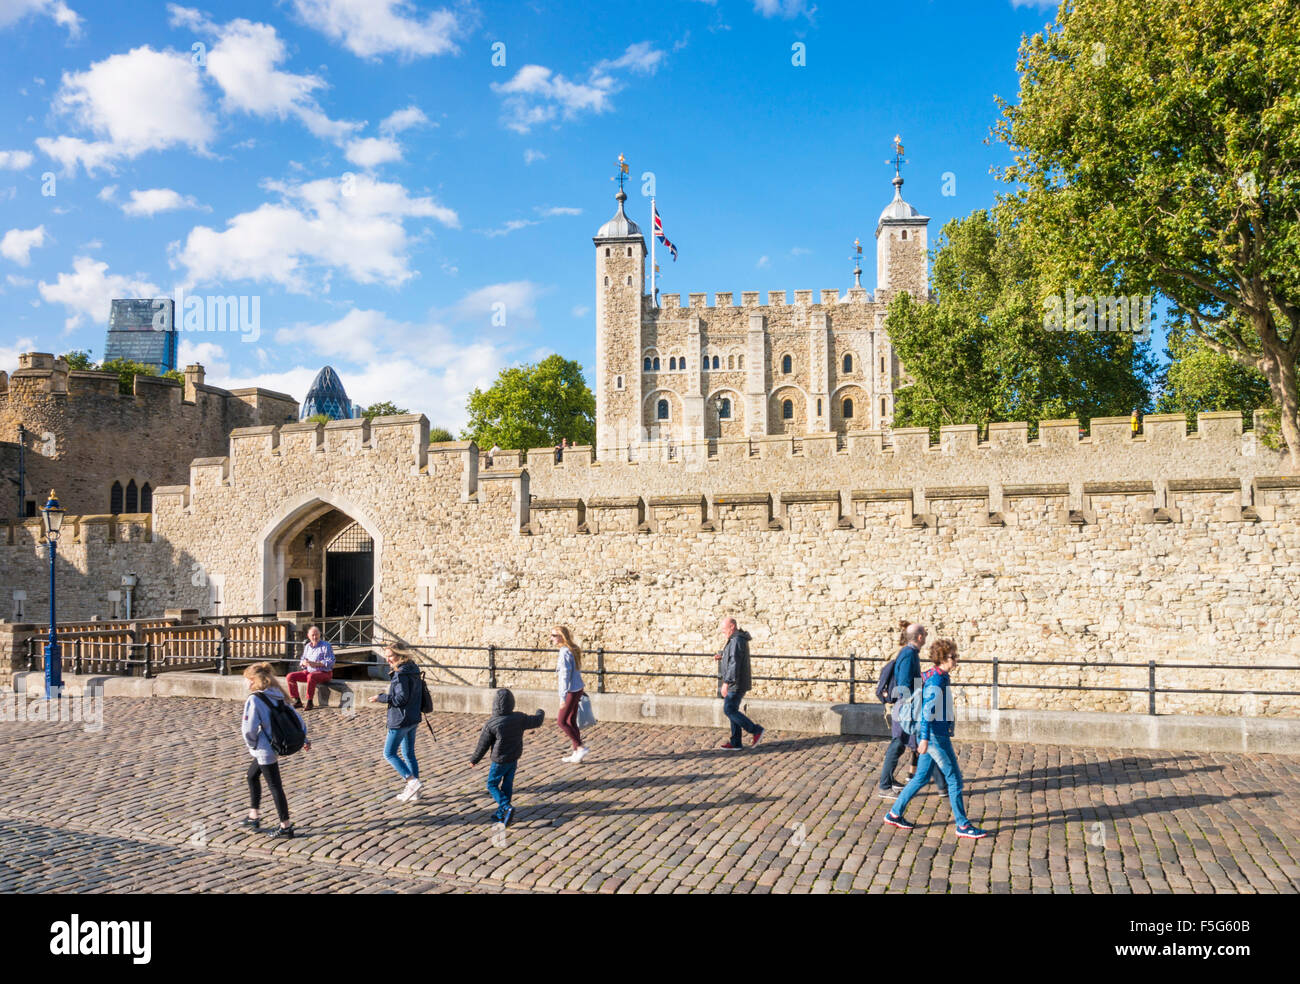 La gente a camminare lungo le mura del castello e torre bianca torre di Londra visualizza i dettagli di City di Londra Inghilterra GB UK EU Europe Foto Stock